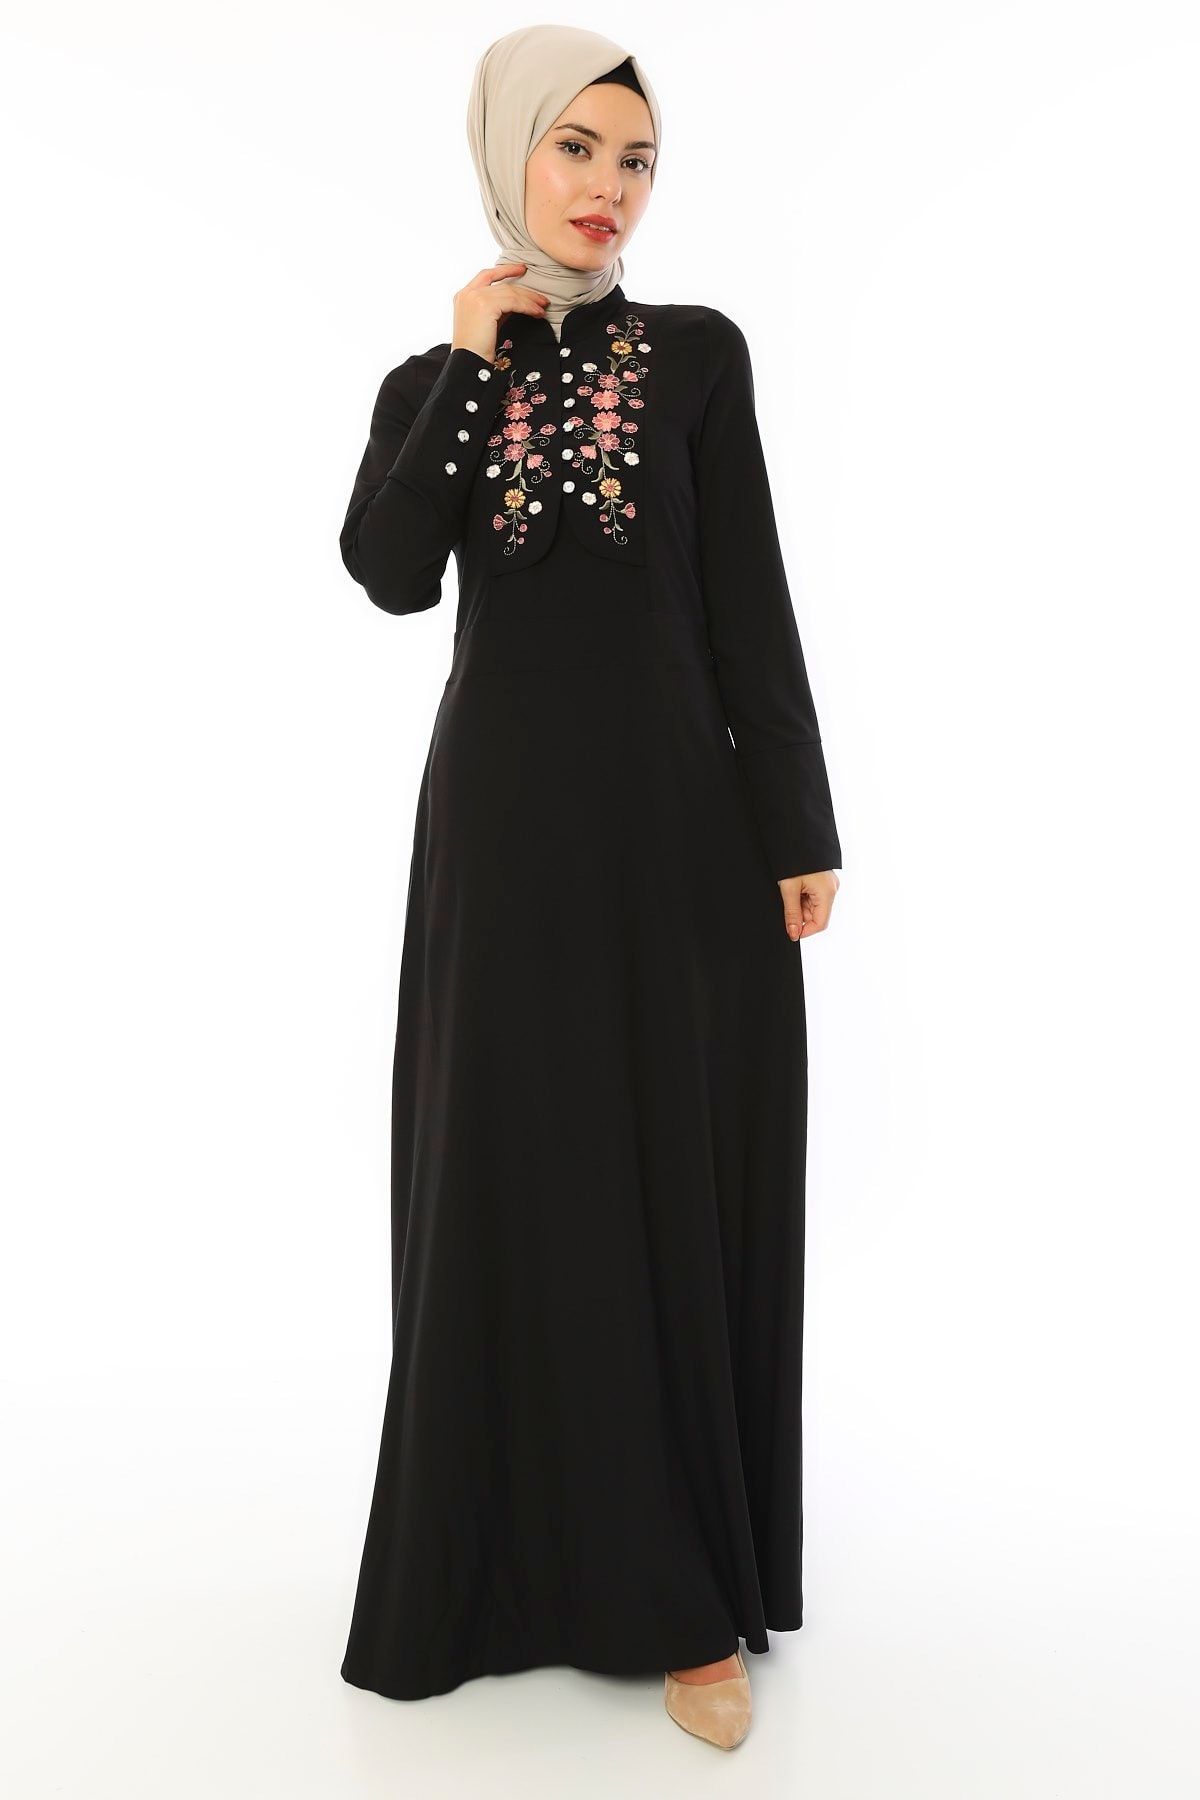 apsen Kadın Siyah Çiçek Desenli Valencia Elbise 3545